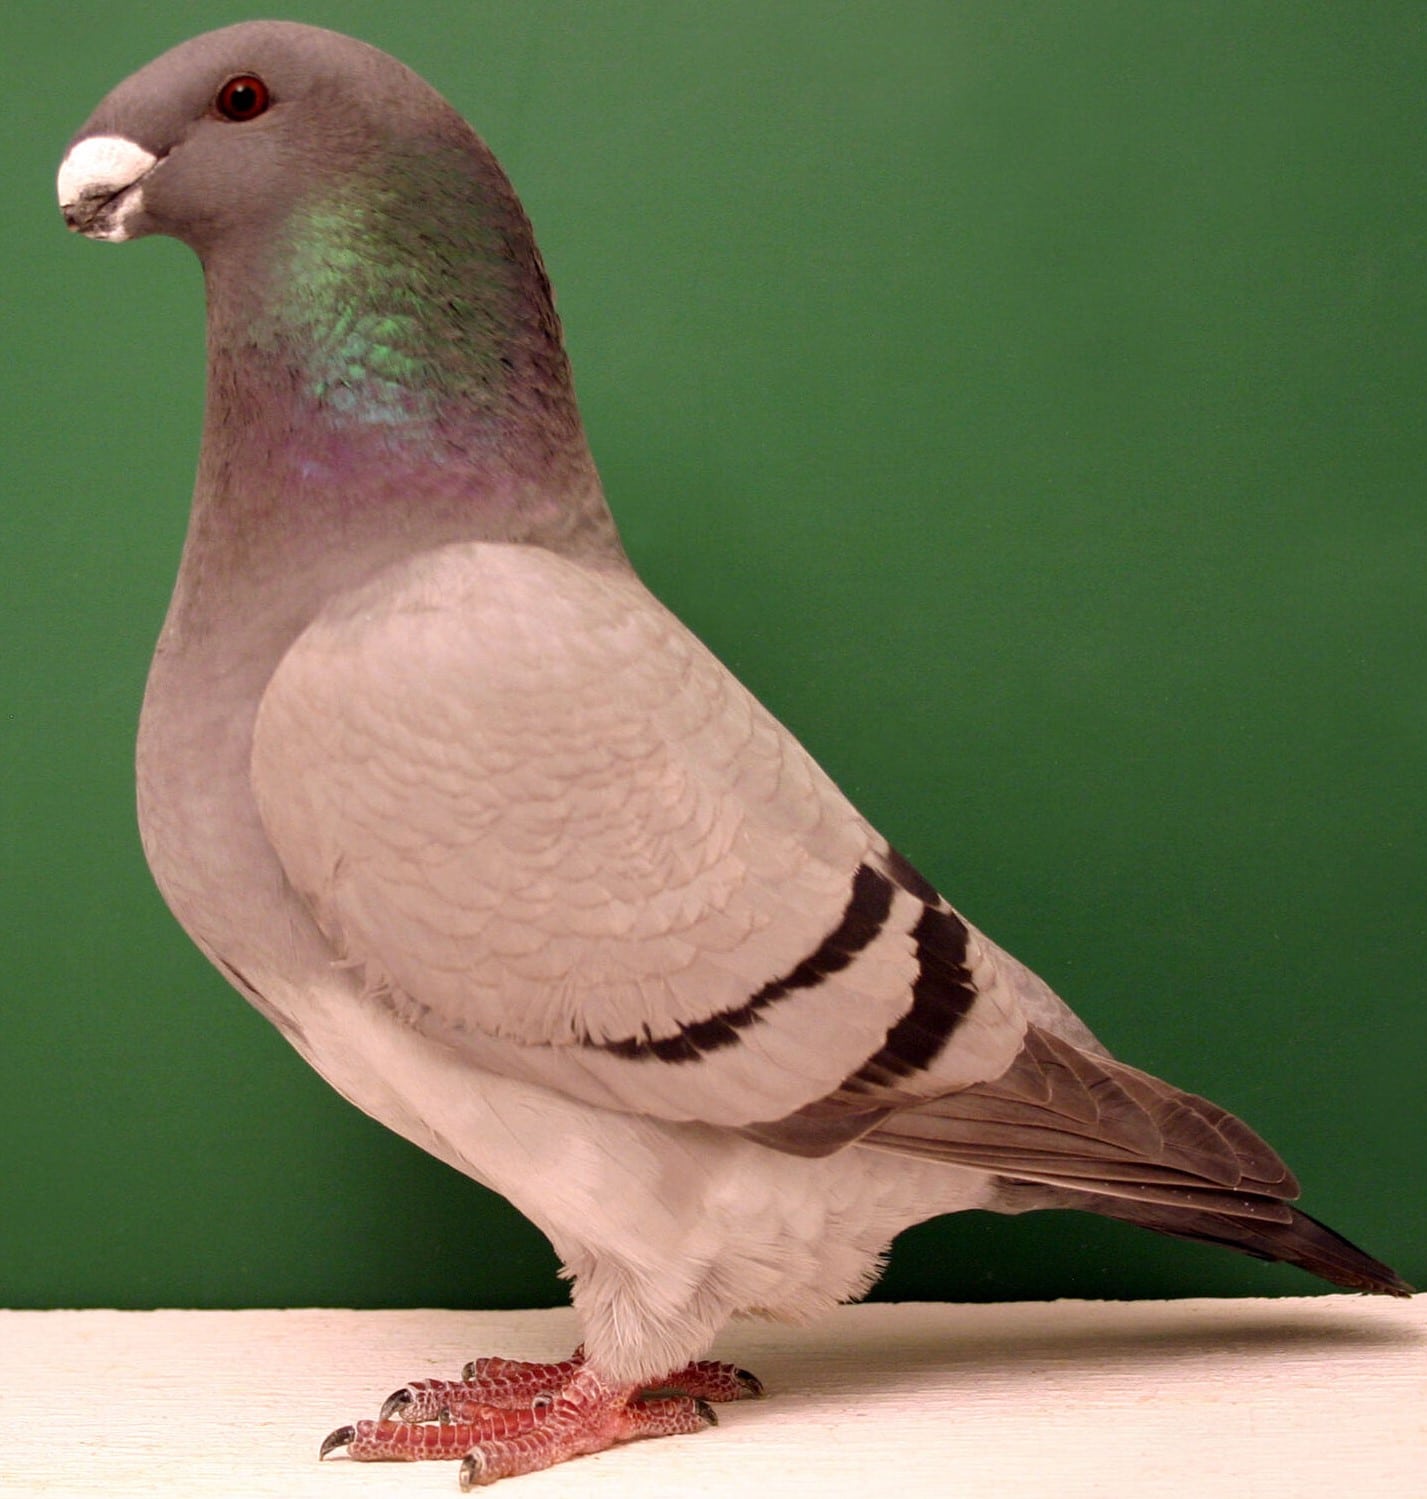 Show racer le pigeon américain de la dignité - LE MEILLEUR GUIDE ORNITHOLOGIQUE